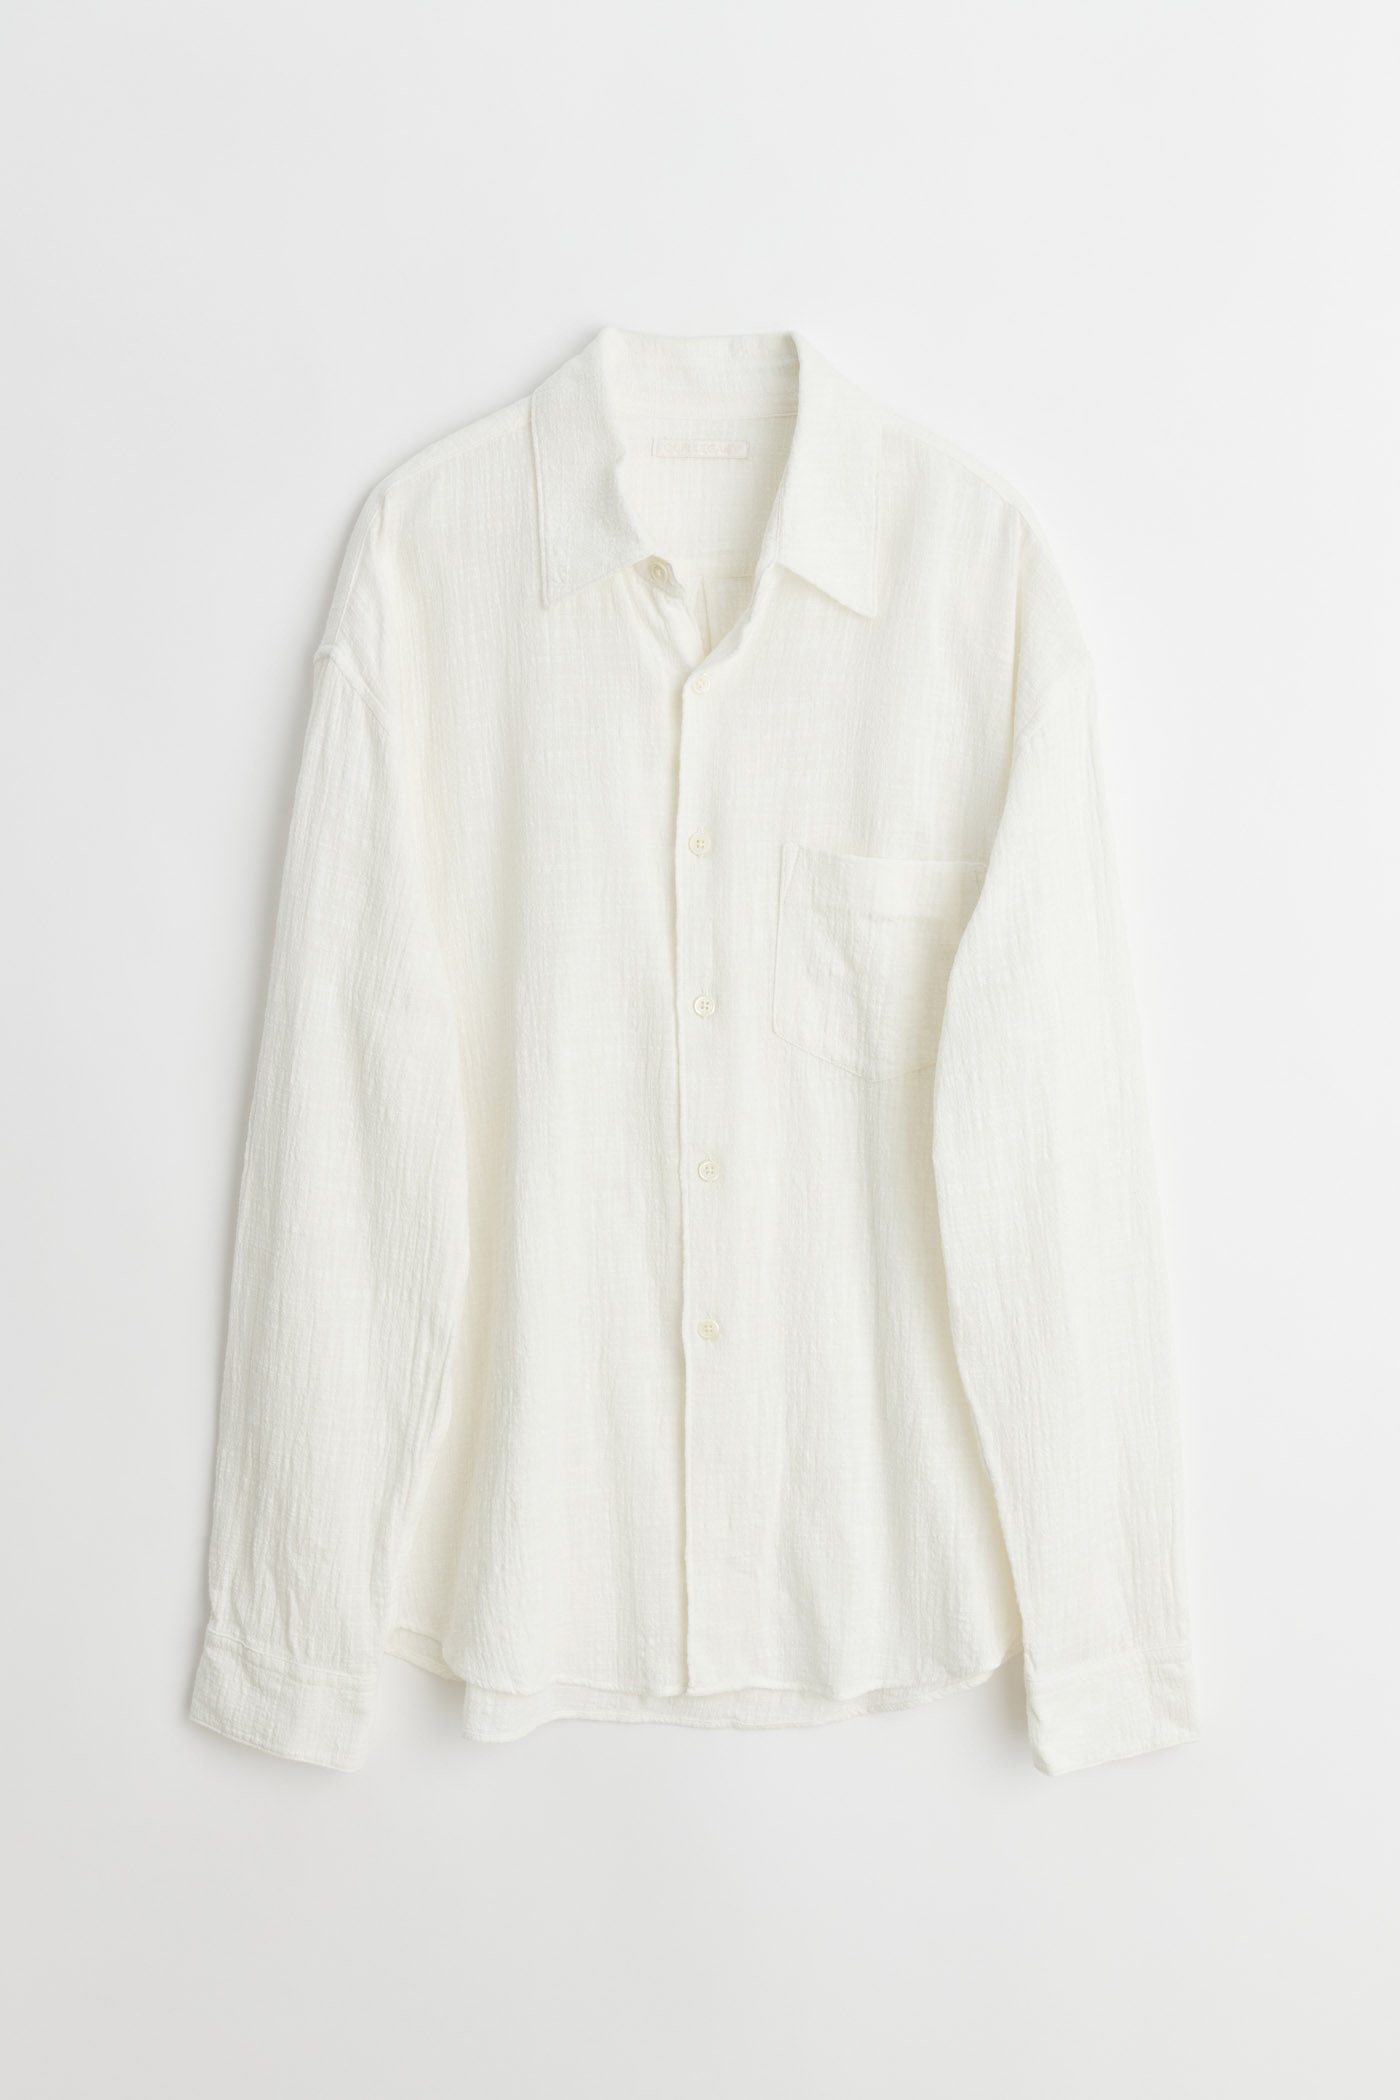 Coco Shirt Off White Air Cotton - 1